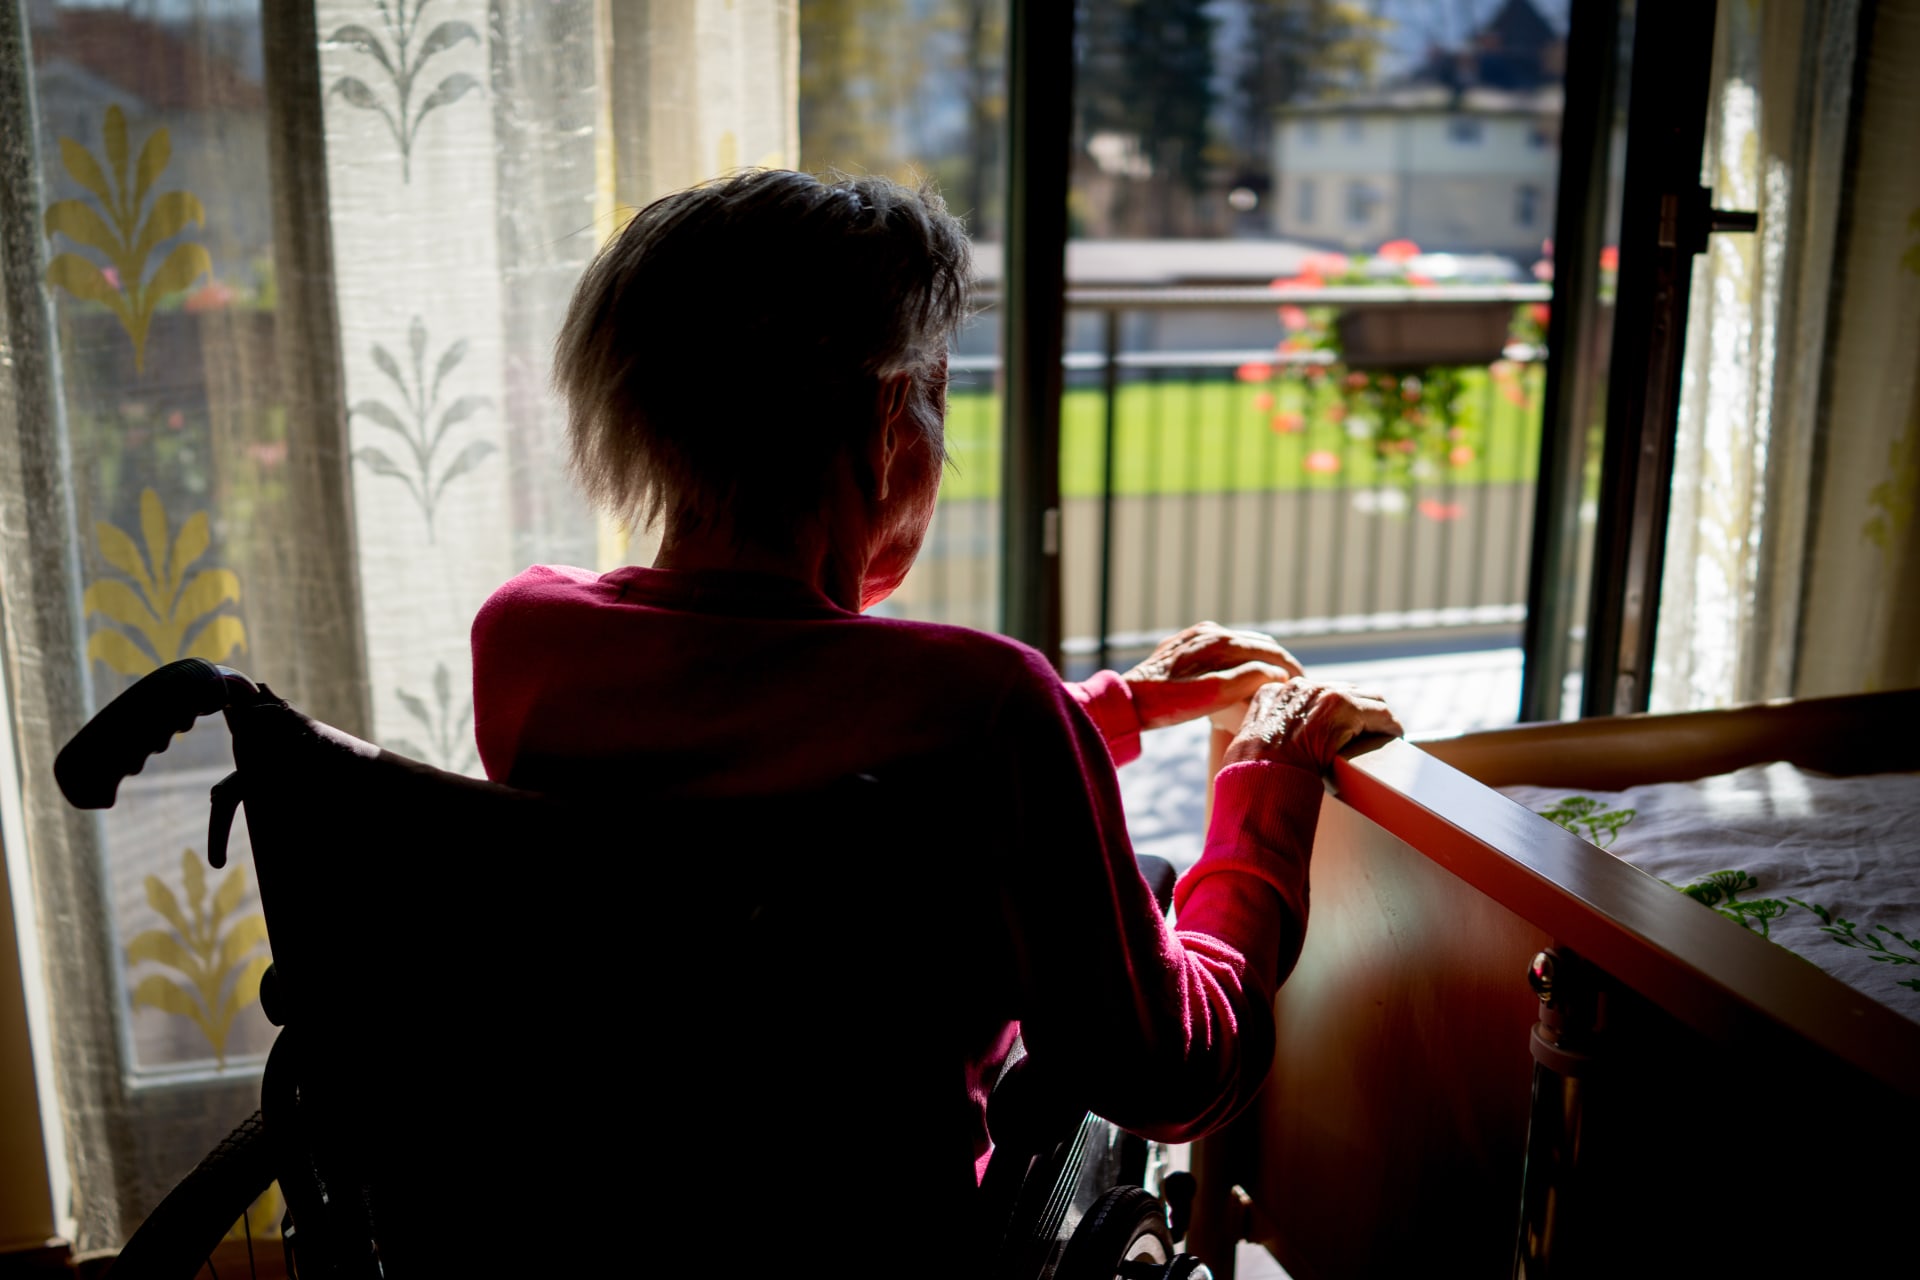 Pacientů s Alzheimerovou chorobou a dalšími druhy demence bude v následujících letech podle odborníků přibývat.